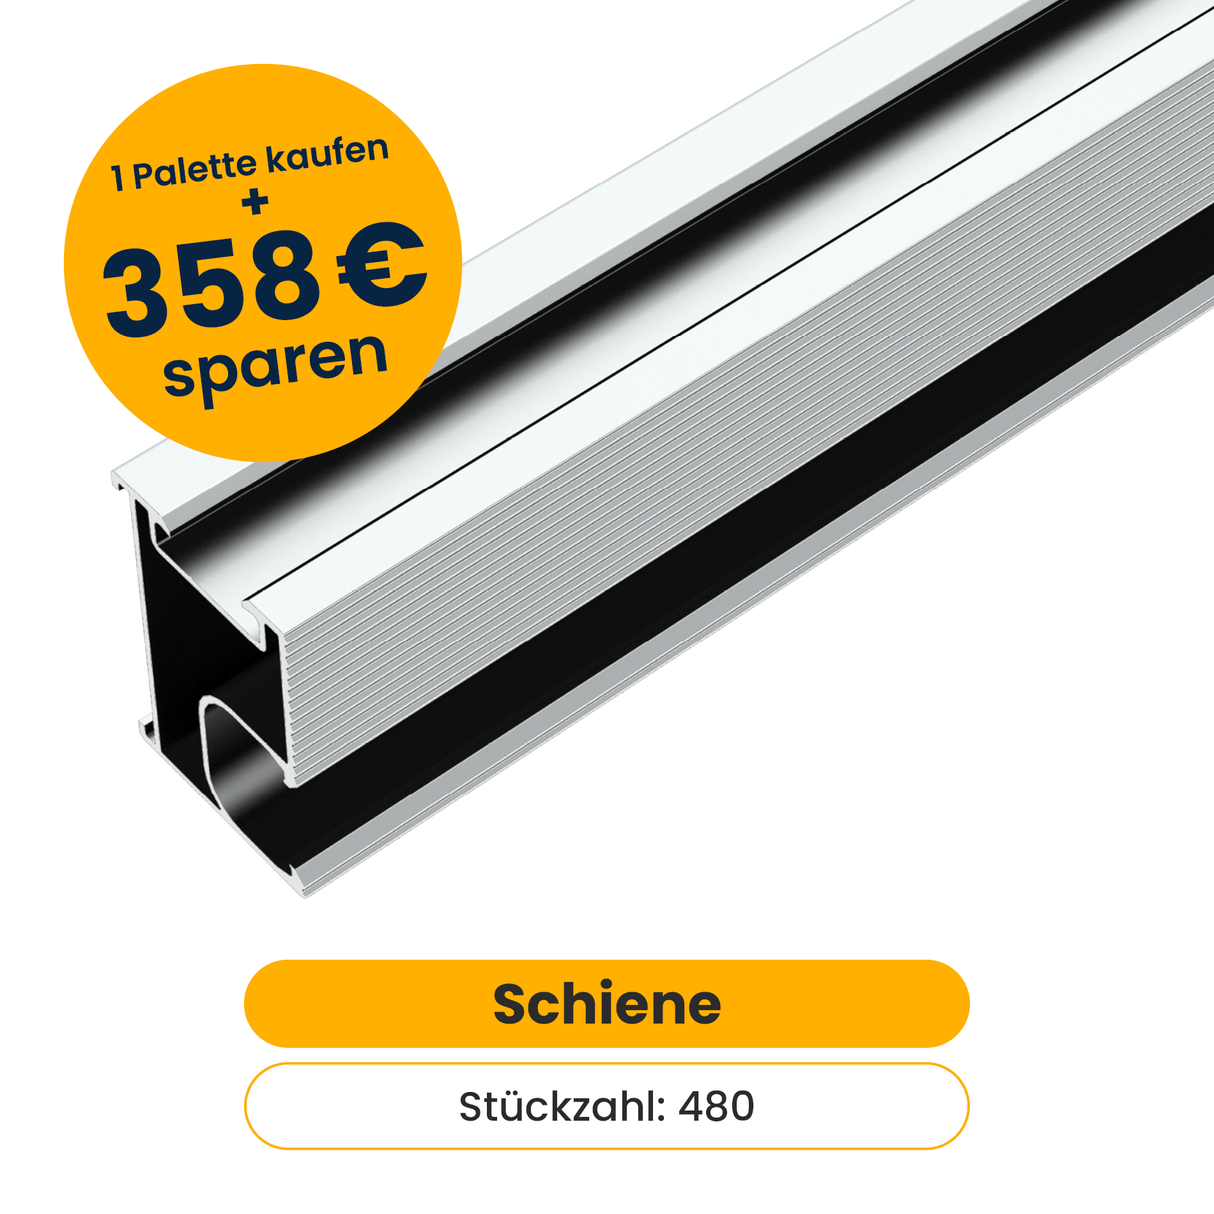 480x Clenergy Schienen (Aluminium, 238cm) | Palette kaufen und sparen